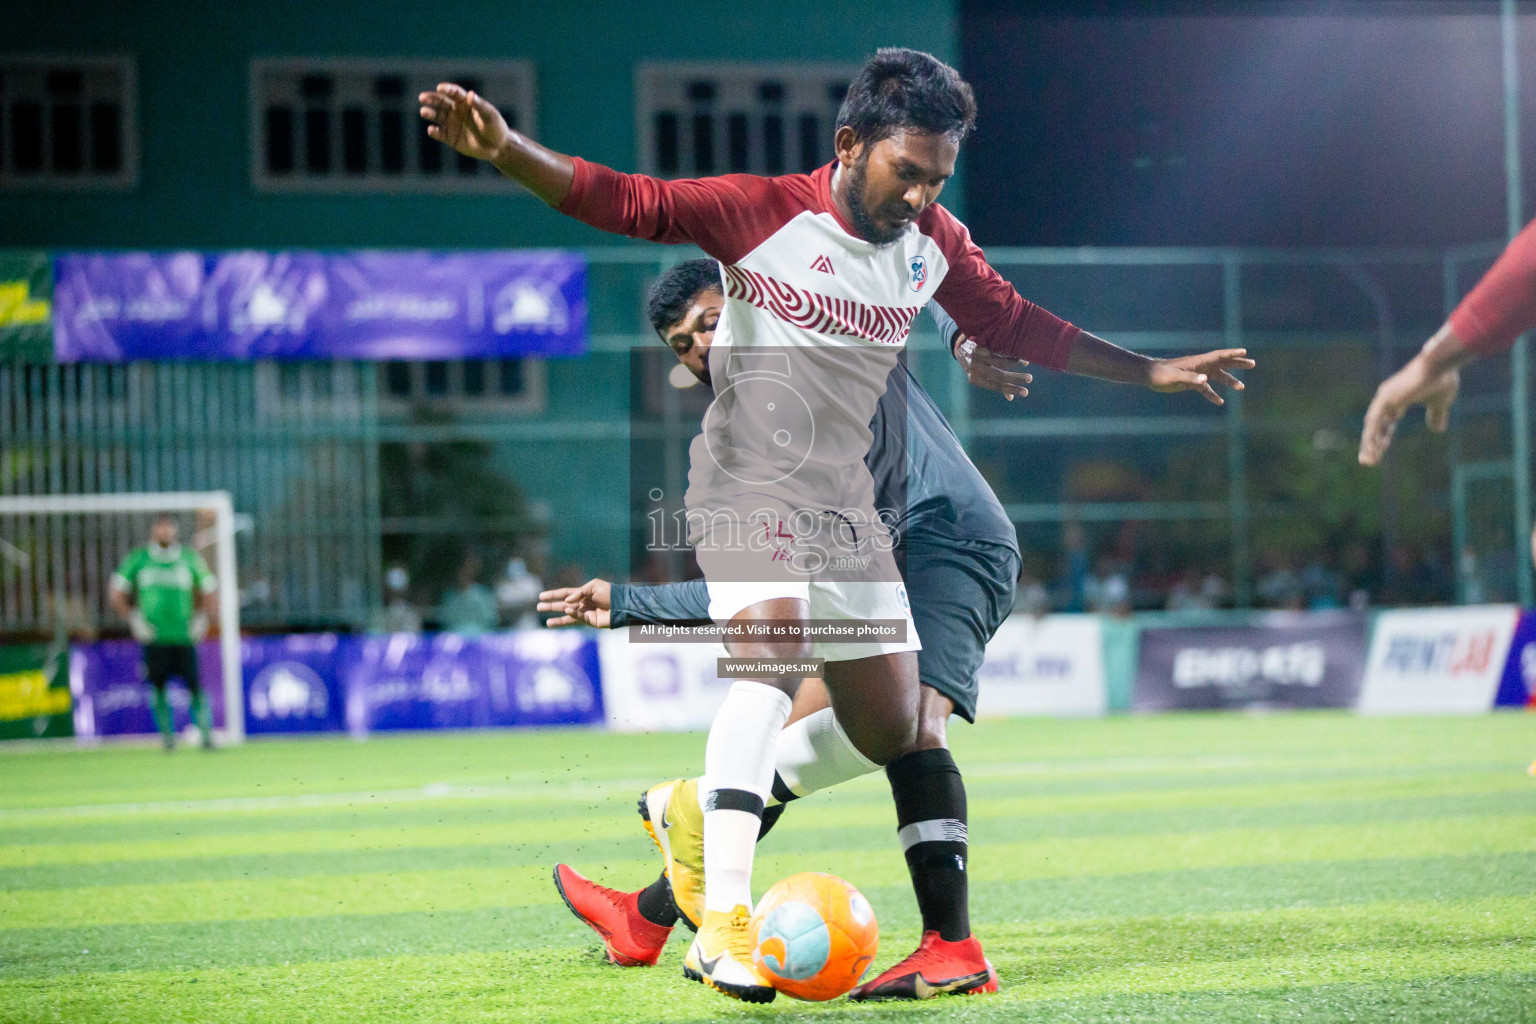 Club Maldives Day 6 - 26th November 2021, at Hulhumale. Photos by Suadh Abdul Sattar and Nasam / Images.mv